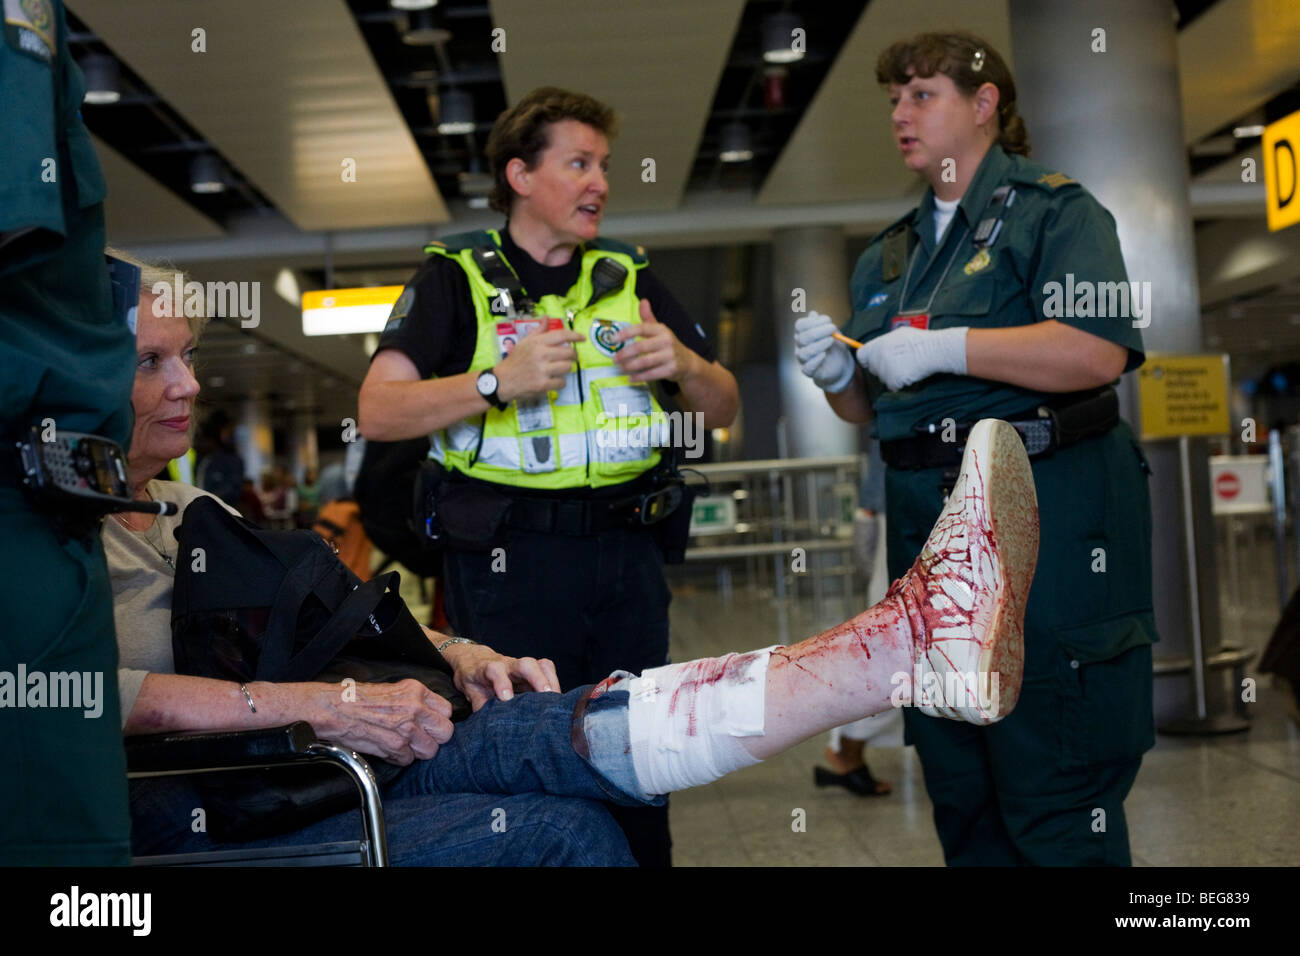 Les intervenants paramédicaux NHS assiste à une dame passager dans le terminal 3 d'Heathrow qui a trébuché et mal gashed sa jambe. Banque D'Images